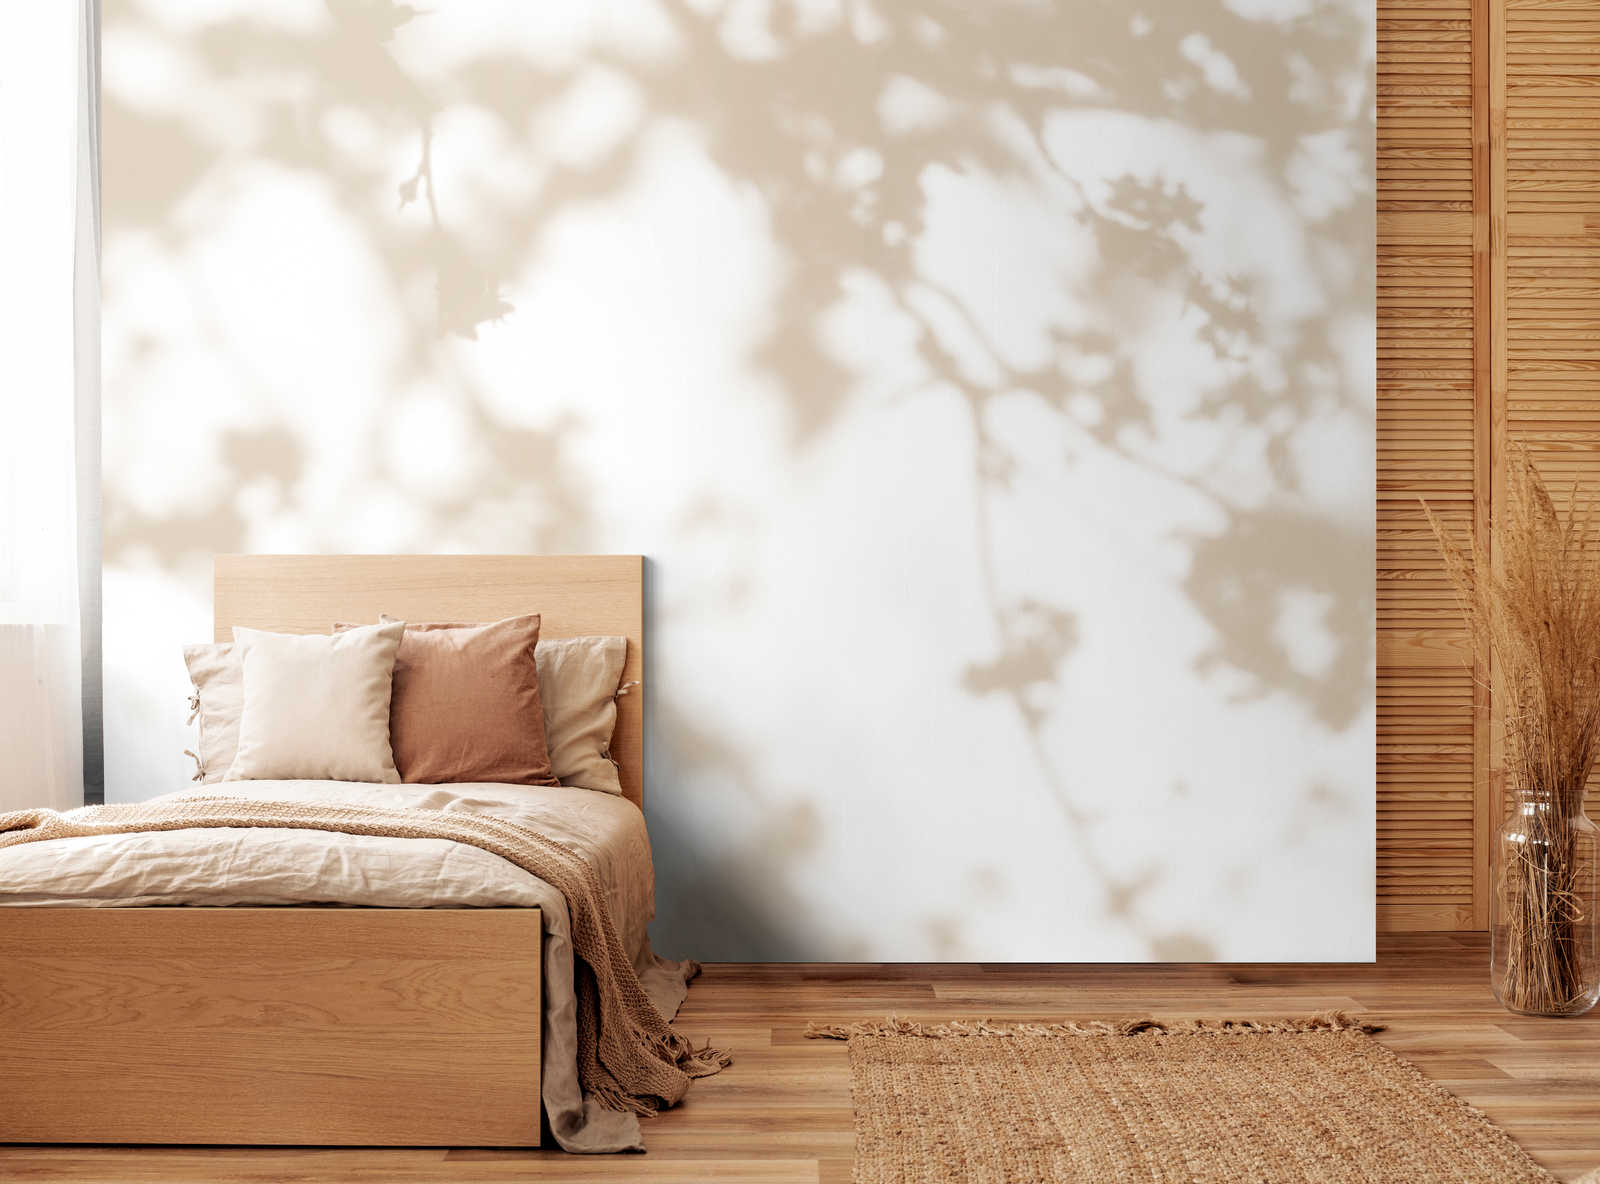             Light Room 3 - Papier peint Ombre de la nature en beige et blanc
        